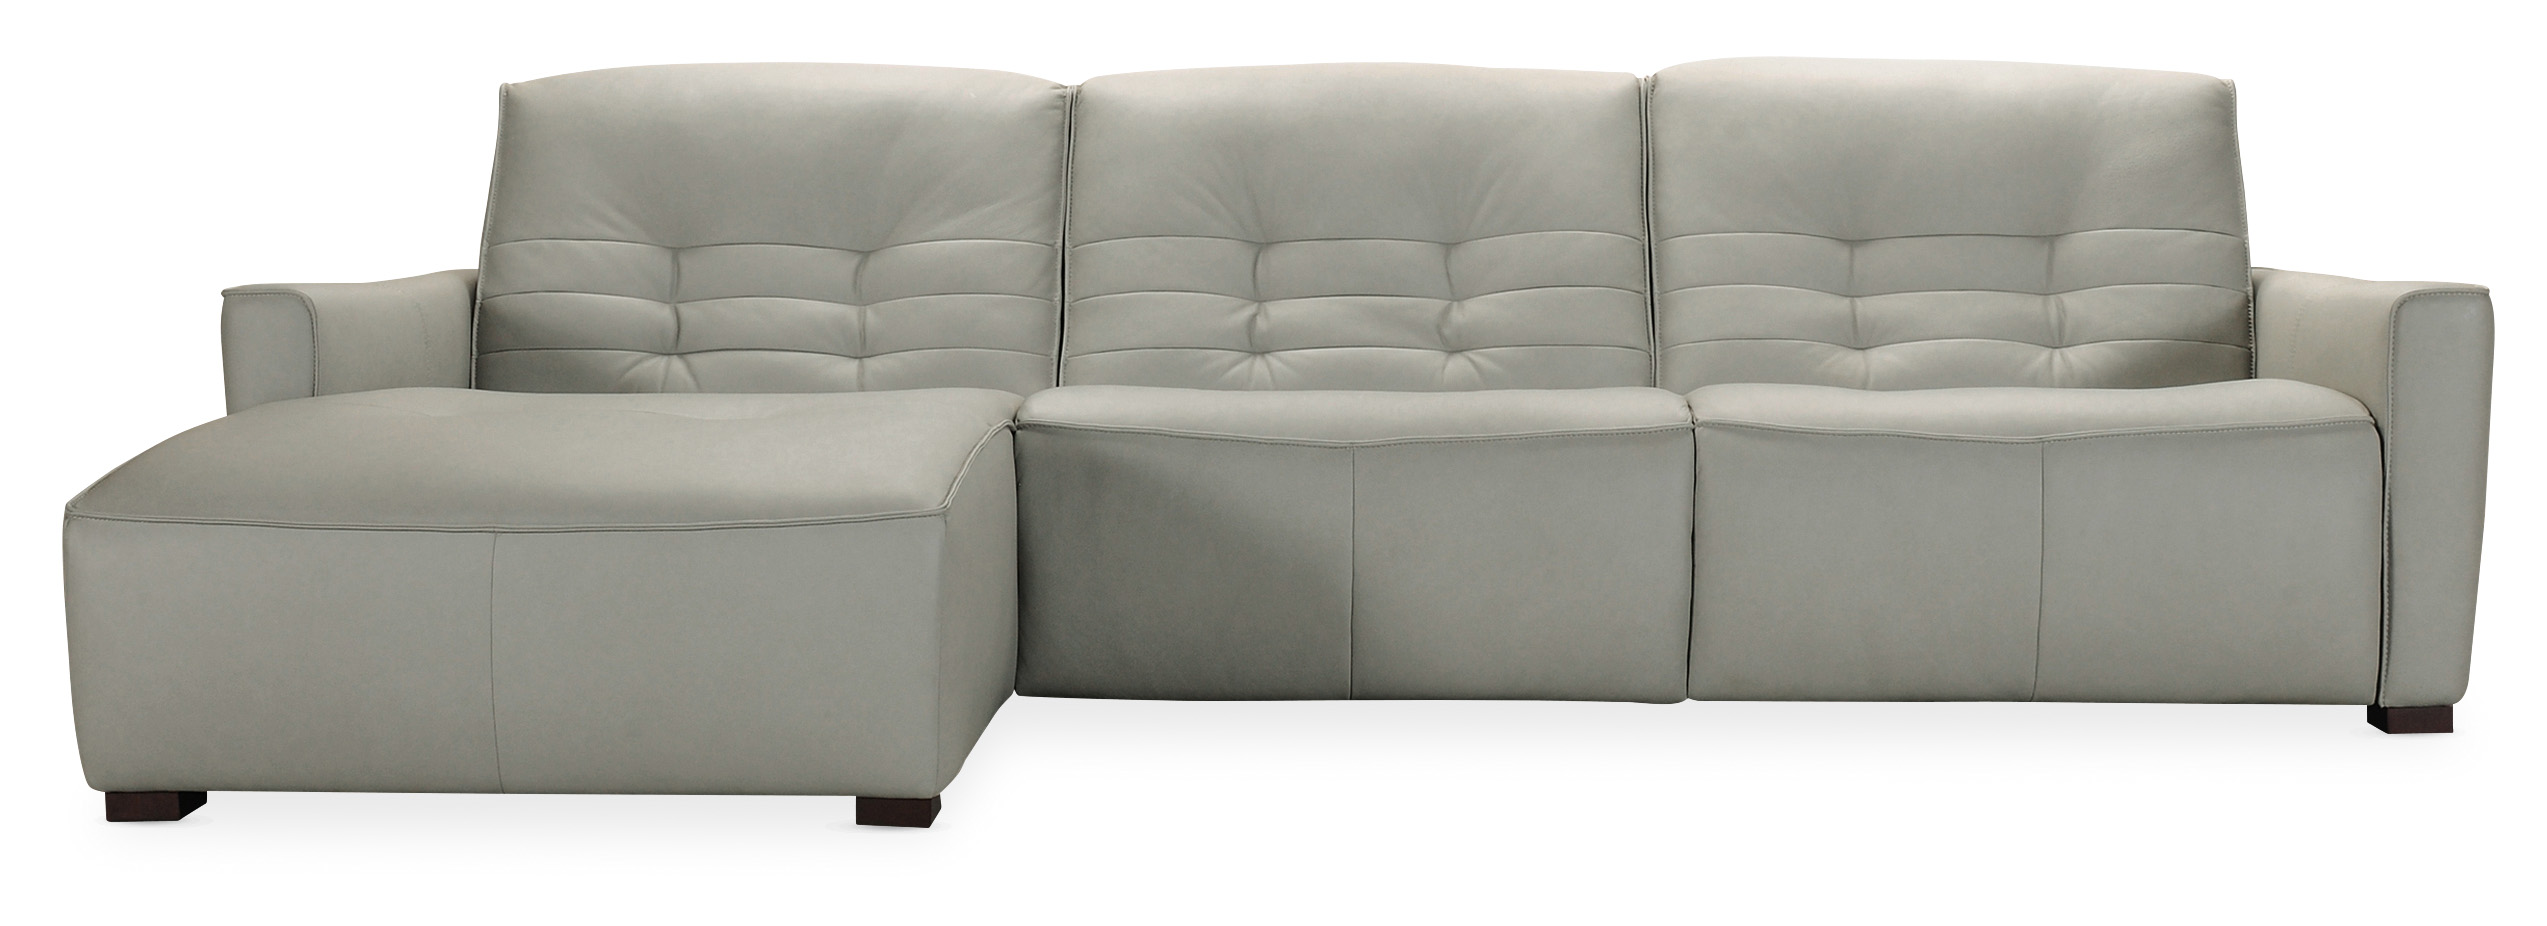 Picture of Reaux 3-Piece LAF Chais Power Sofa